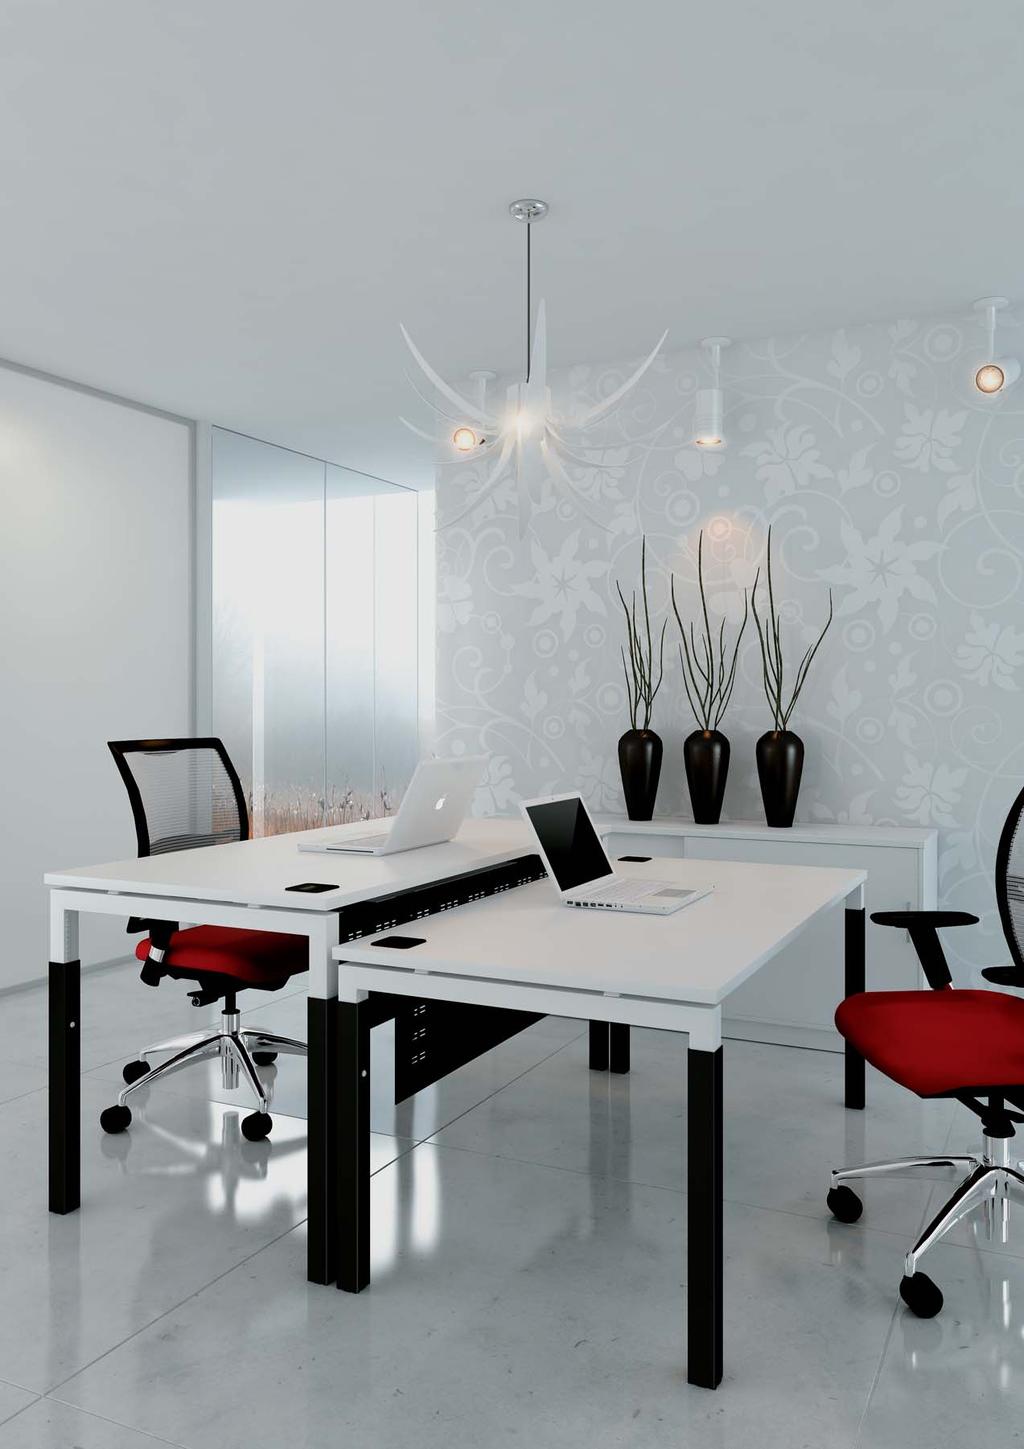 Advance Rektangulære Arbeidsstasjon Elegant, enhetlige design gjør at Advance arbeidsstasjoner konfigureres i en høyde som passer til